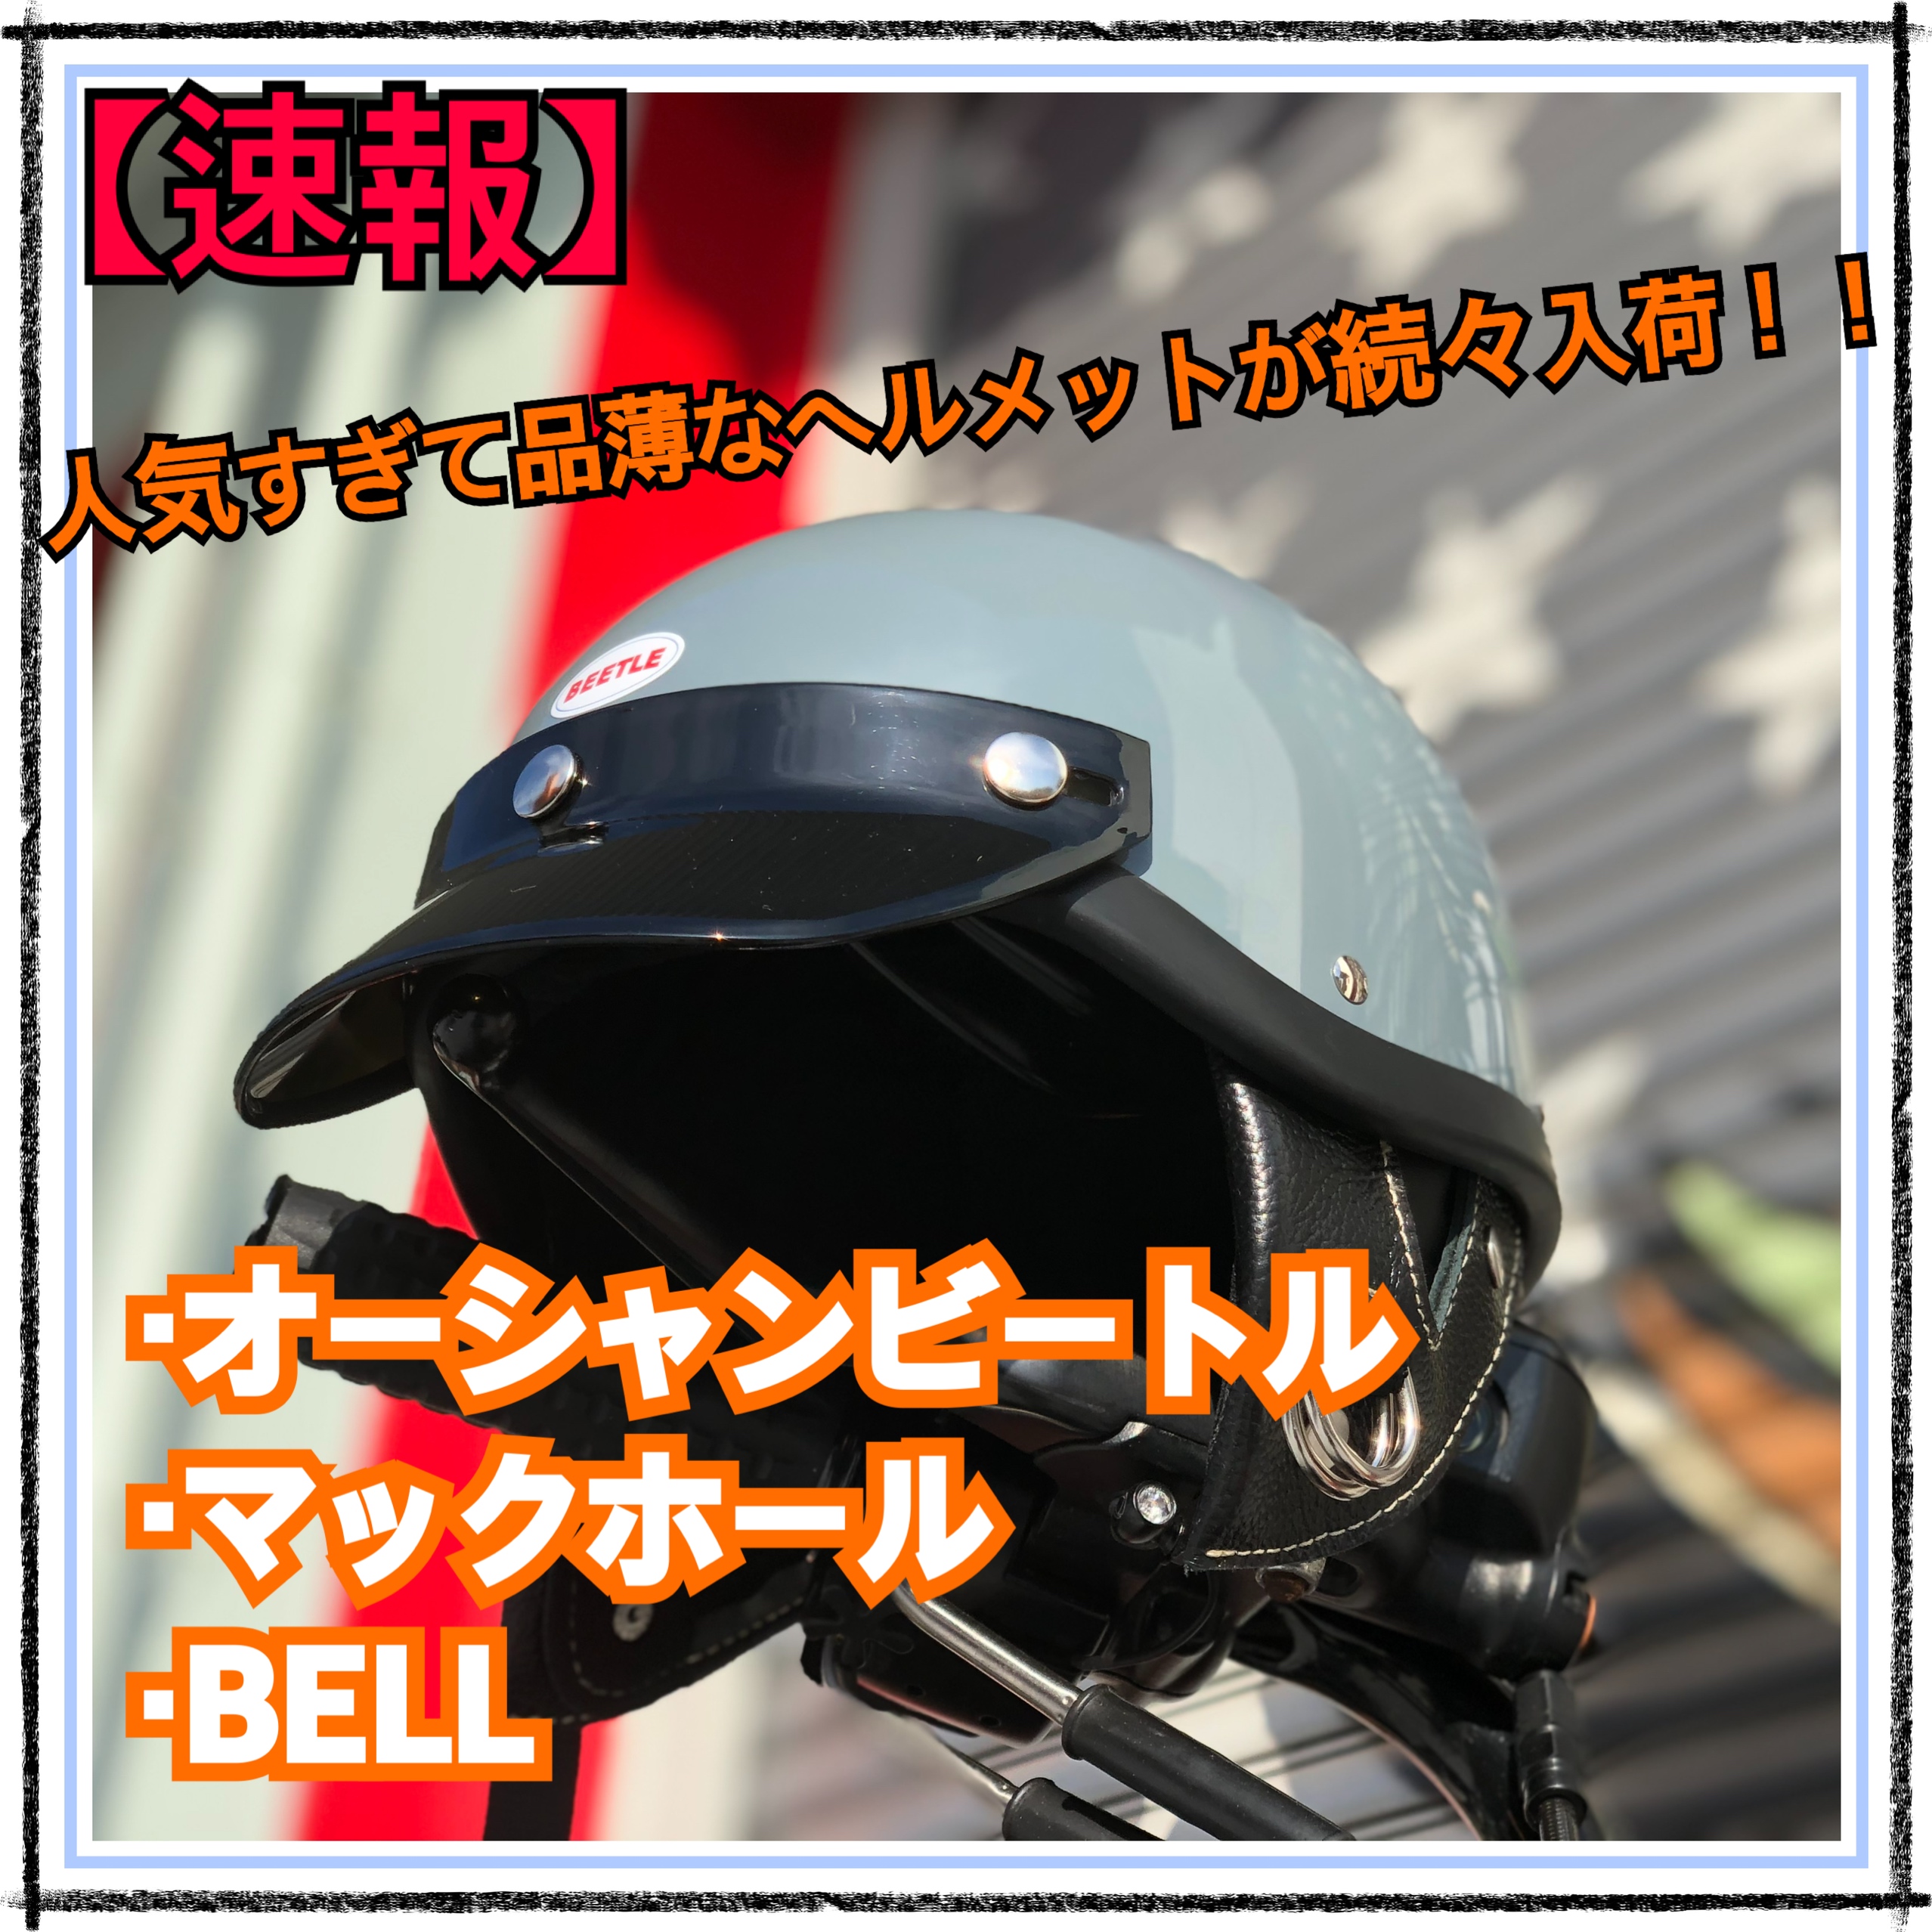 【入荷速報】マックホール『アポロ(Apollo)』/Bell(ベル) Bullitt(ブリット) / パインバレー限定ヘルメット etc.　お待たせしました！大人気ヘルメット3種類が再入荷！！